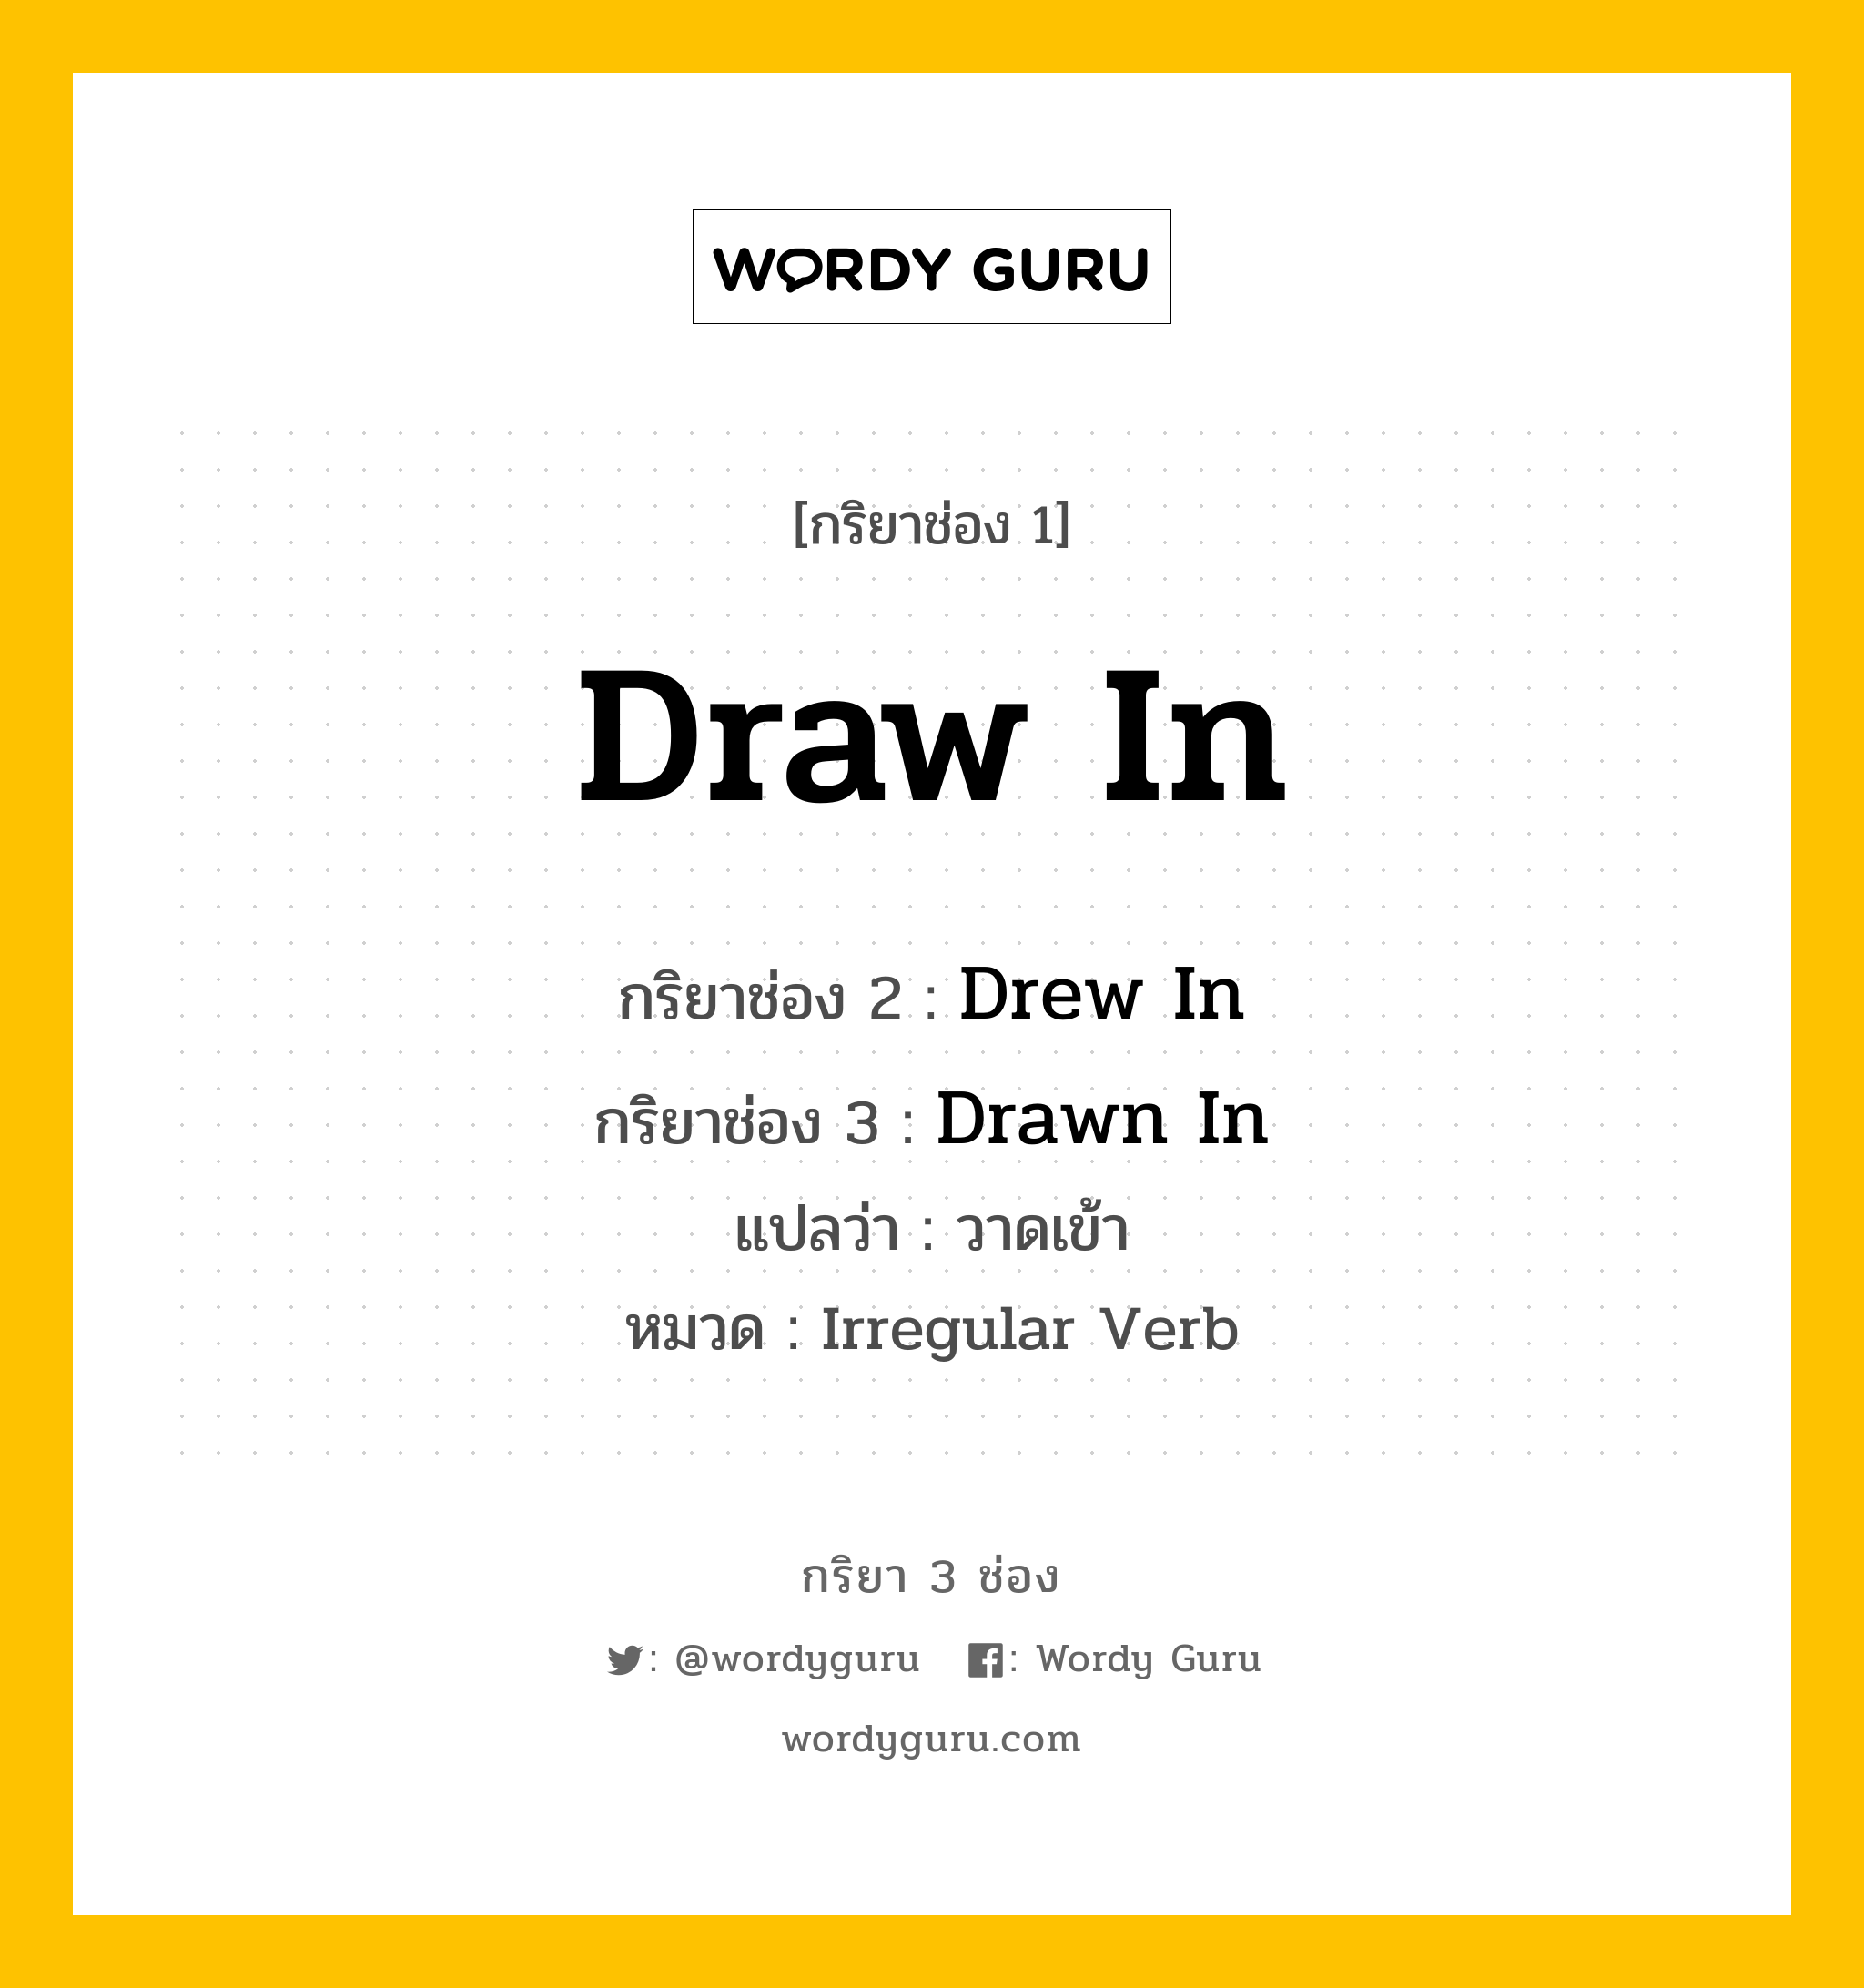 กริยา 3 ช่อง: Draw In ช่อง 2 Draw In ช่อง 3 คืออะไร, กริยาช่อง 1 Draw In กริยาช่อง 2 Drew In กริยาช่อง 3 Drawn In แปลว่า วาดเข้า หมวด Irregular Verb หมวด Irregular Verb